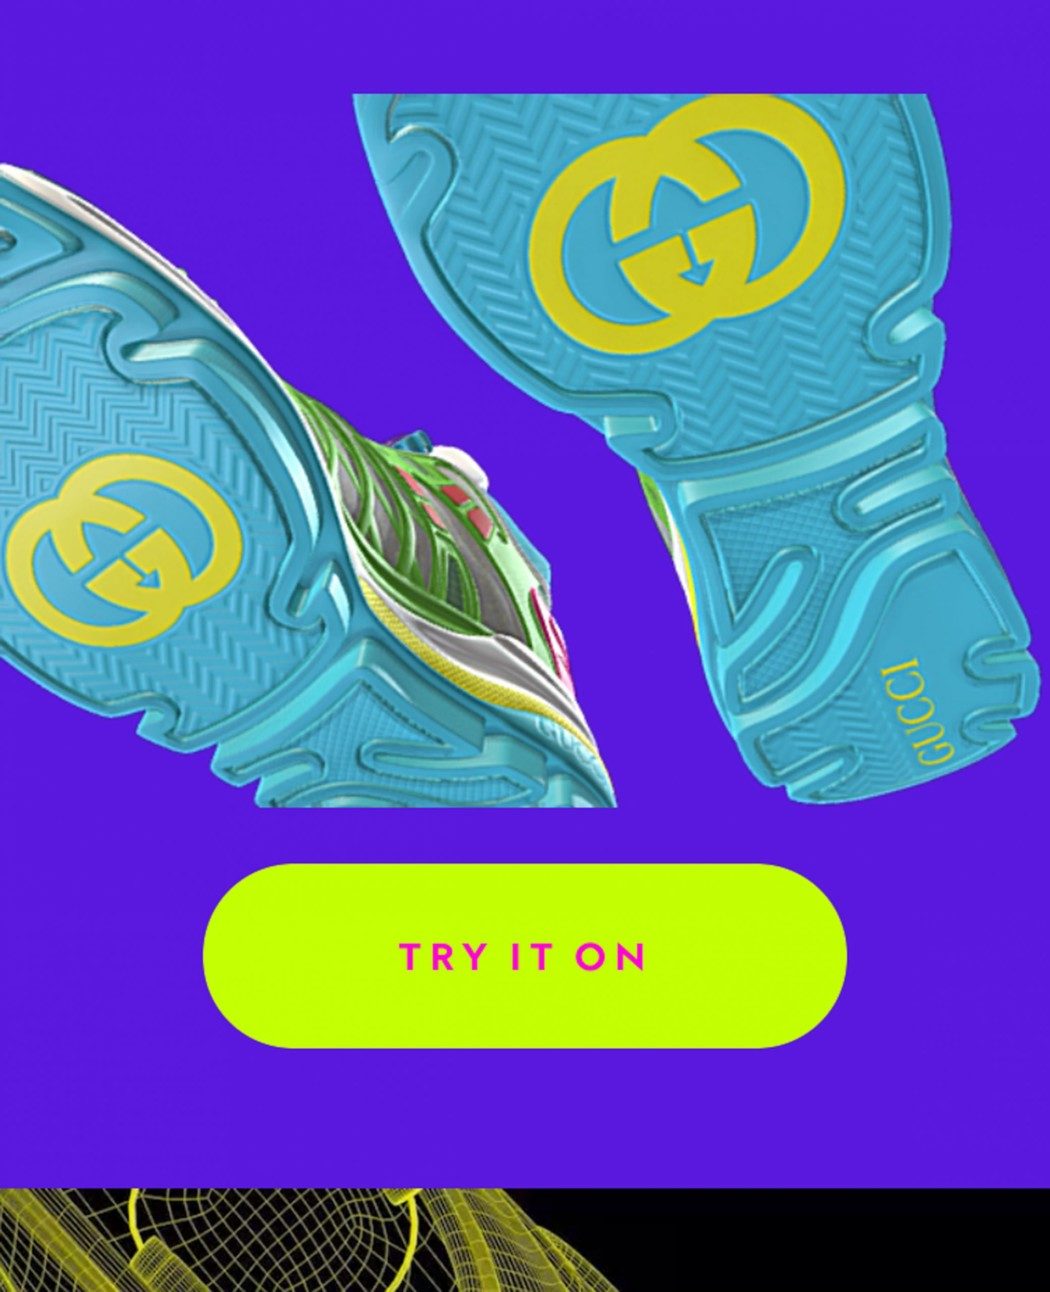 Gucci lança tênis "digital" para uso em games como Roblox e aplicativos parceiros